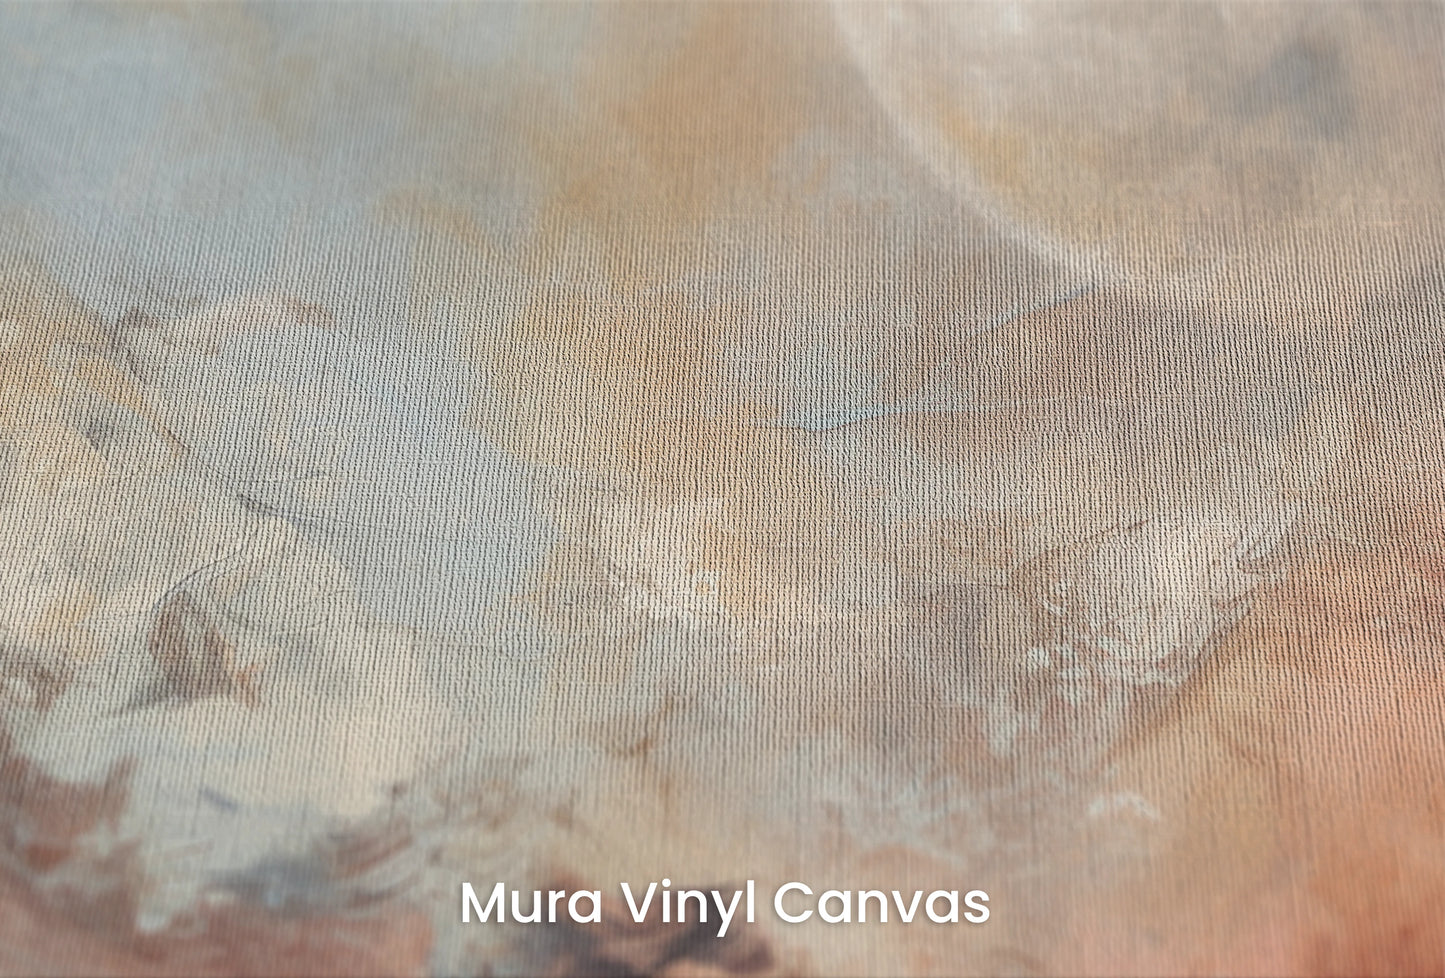 Zbliżenie na artystyczną fototapetę o nazwie Moon's Monochrome na podłożu Mura Vinyl Canvas - faktura naturalnego płótna.